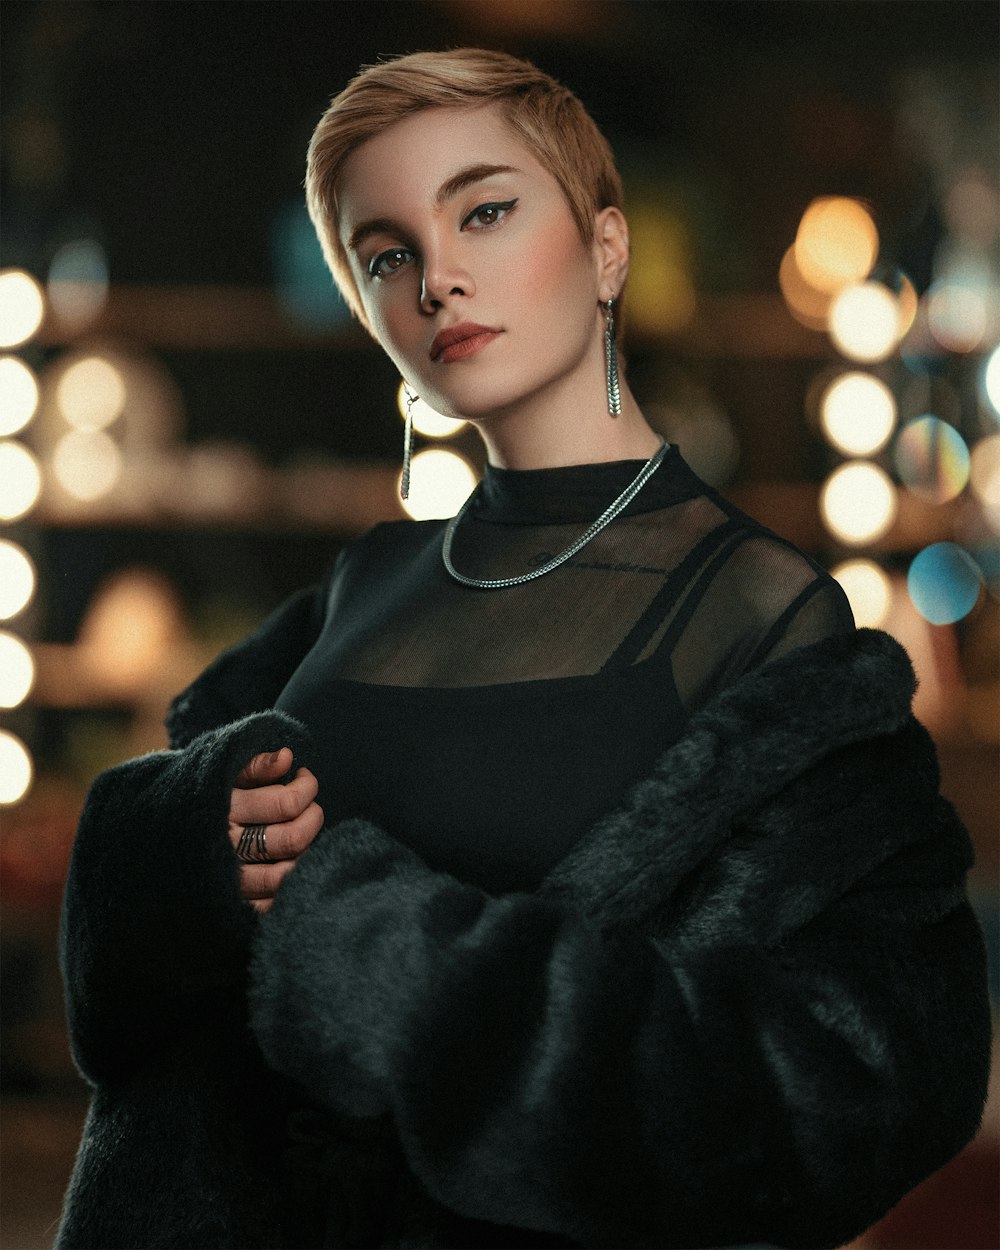 Foto mulher no casaco preto com fones de ouvido brancos – Imagem de Preto  grátis no Unsplash